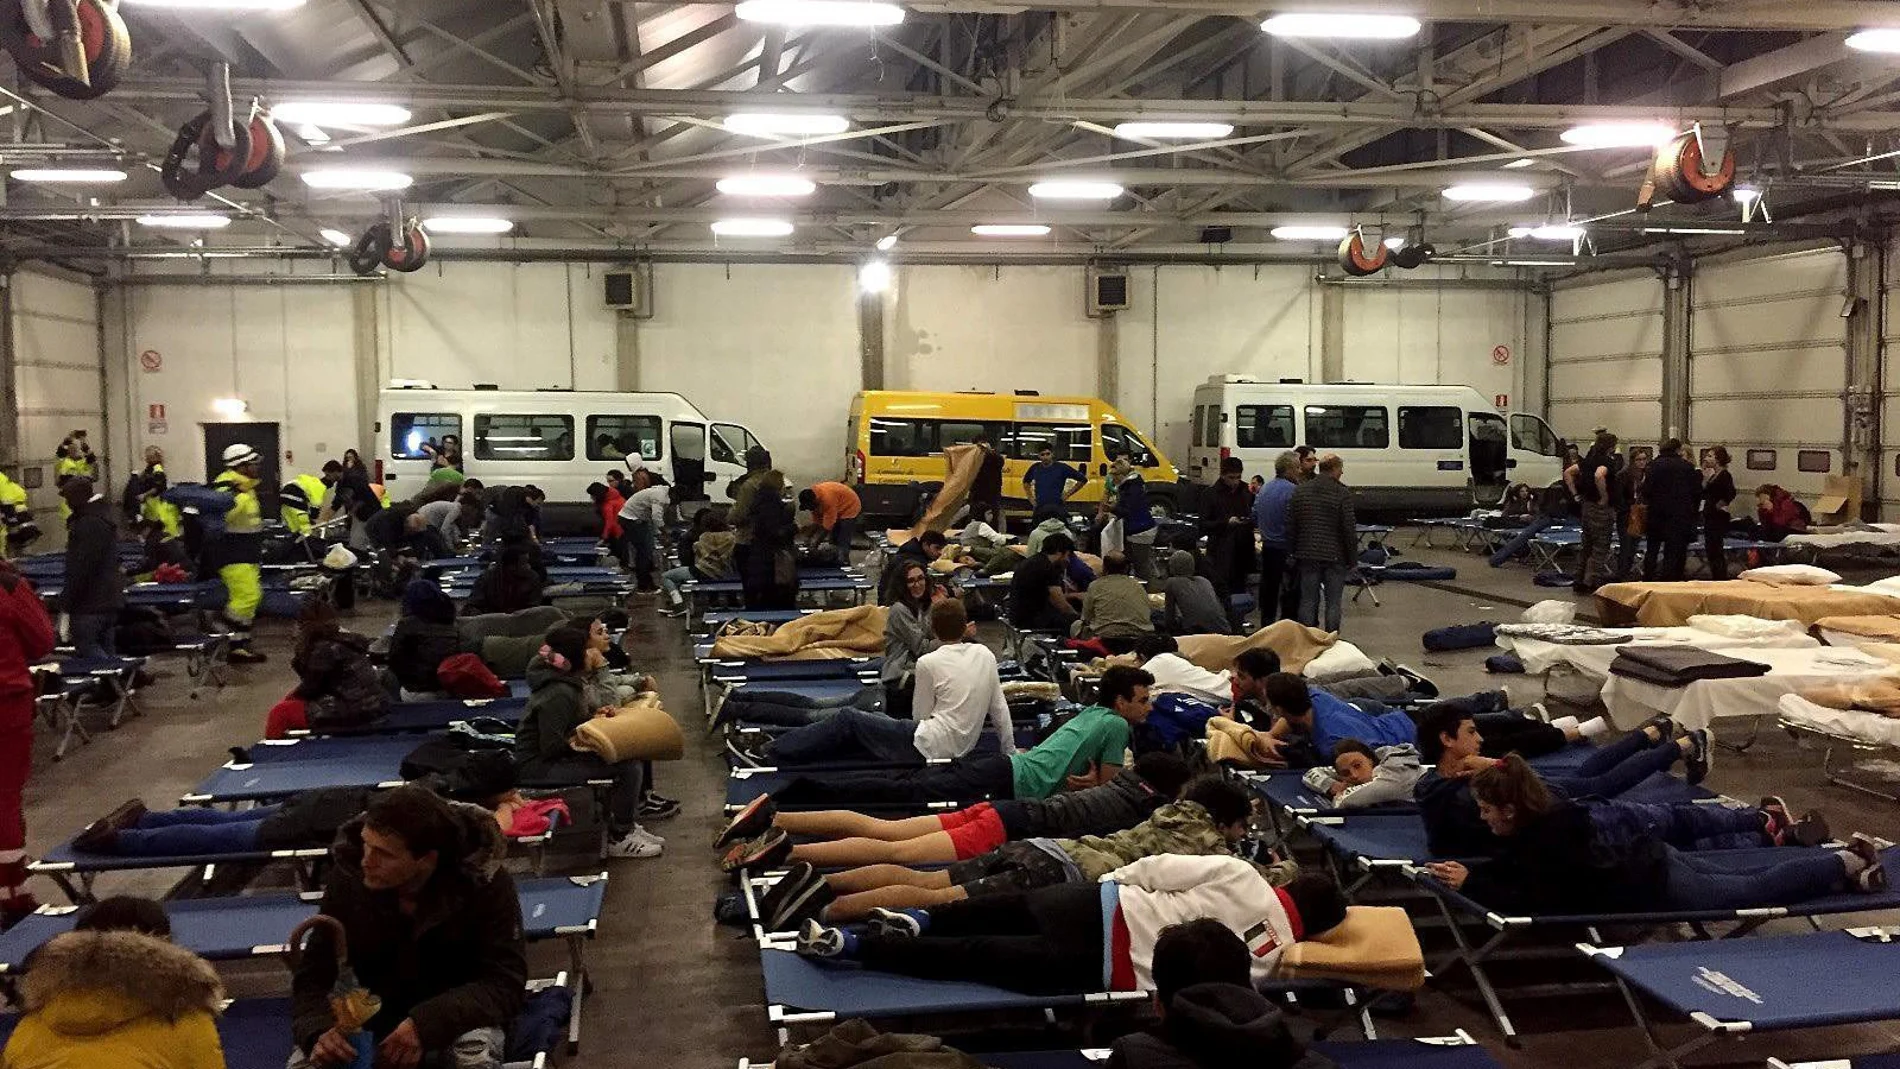 Personas evacuadas por los terremotos, pasan la noche en un hangar de autobuses convertido en refugio temporal, en Camerino, Italia